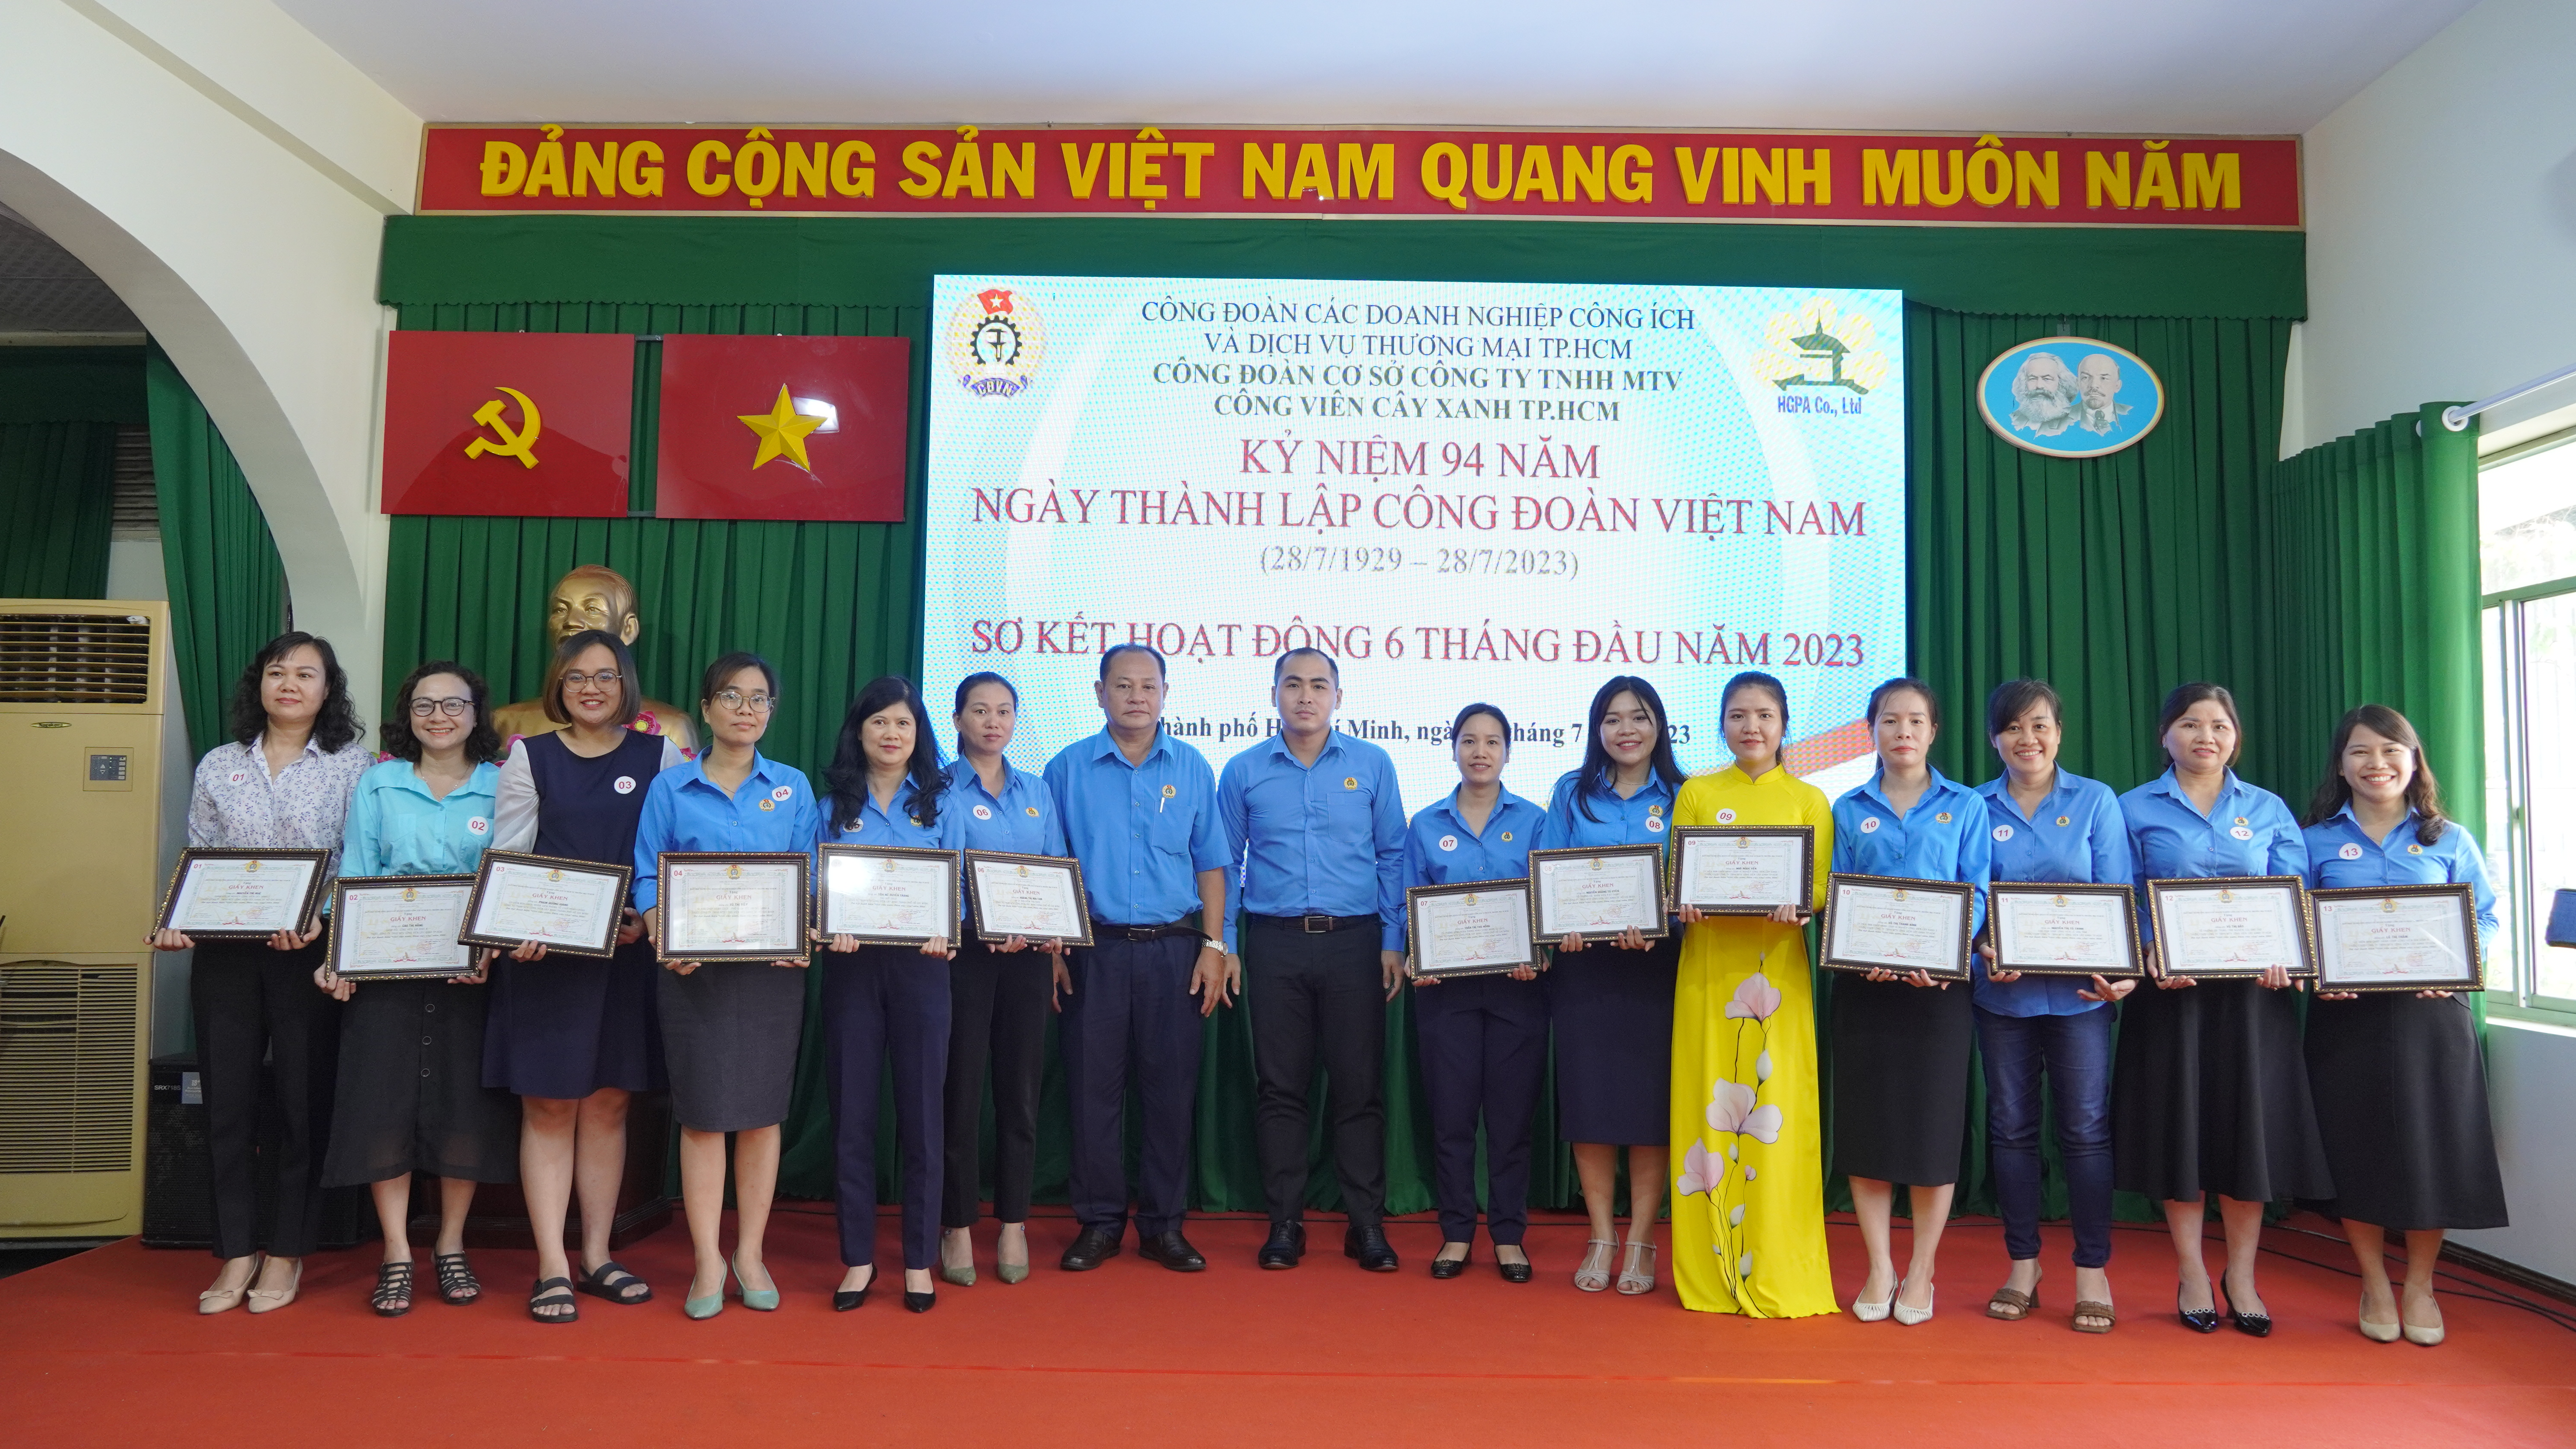 Hội nghị kỷ niệm 94 năm ngày thành lập Công đoàn Việt Nam (28/7/1929 – 28/7/2023) và Sơ kết hoạt động 6 tháng đầu năm 2023